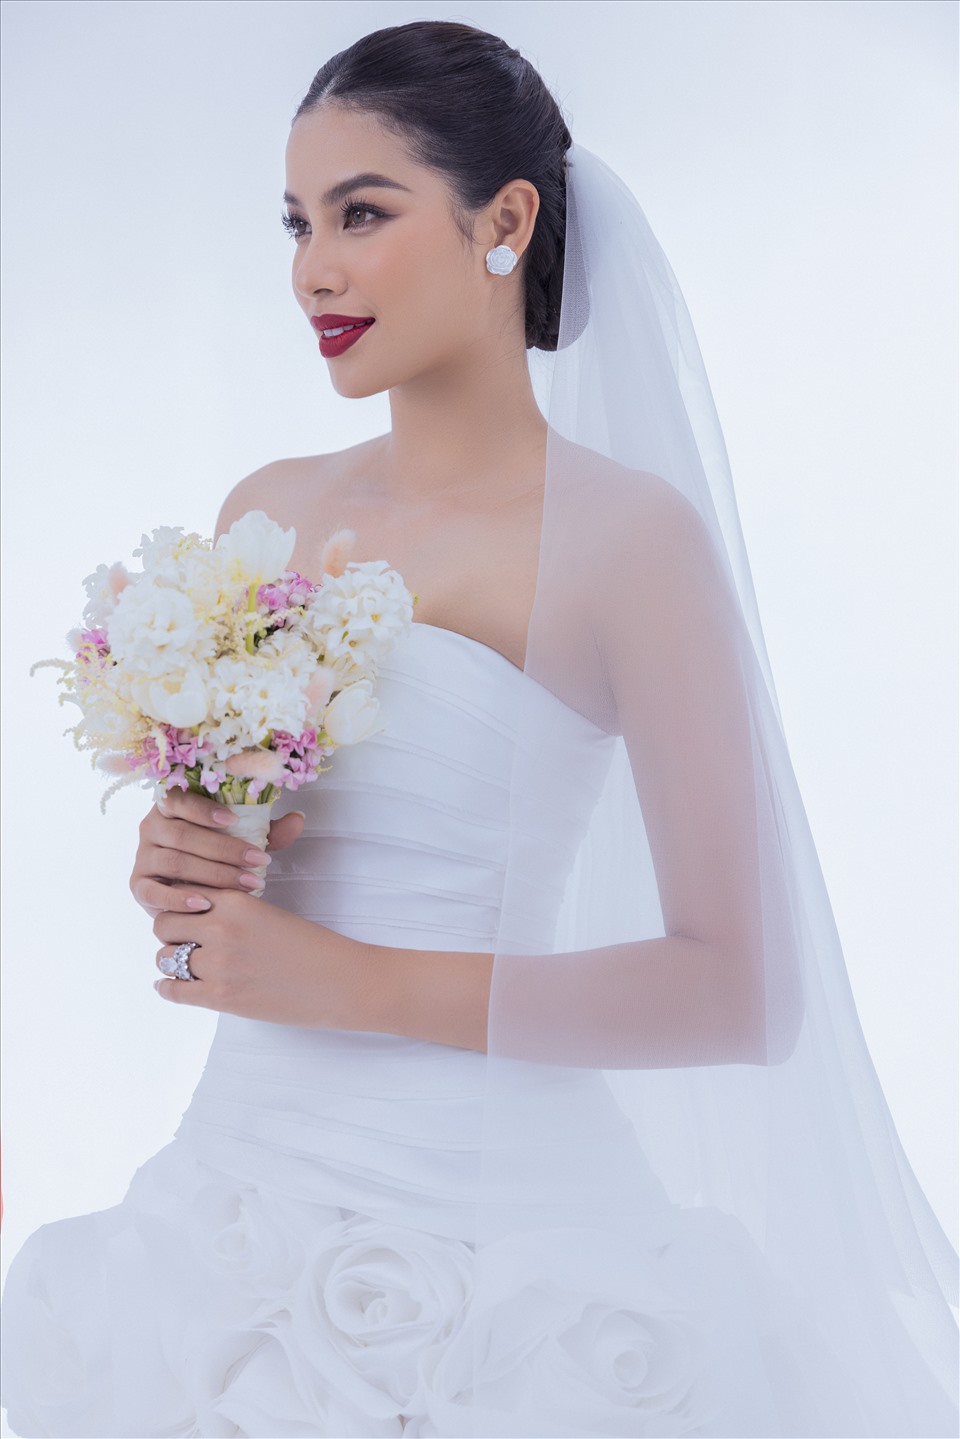 Nếu bạn yêu thích Phạm Hương và muốn biết thêm về ngày cưới của cô ấy, hãy xem ảnh cưới của cô ấy tại đây. Đó là những bức hình tuyệt đẹp, đầy ý nghĩa và cảm xúc.